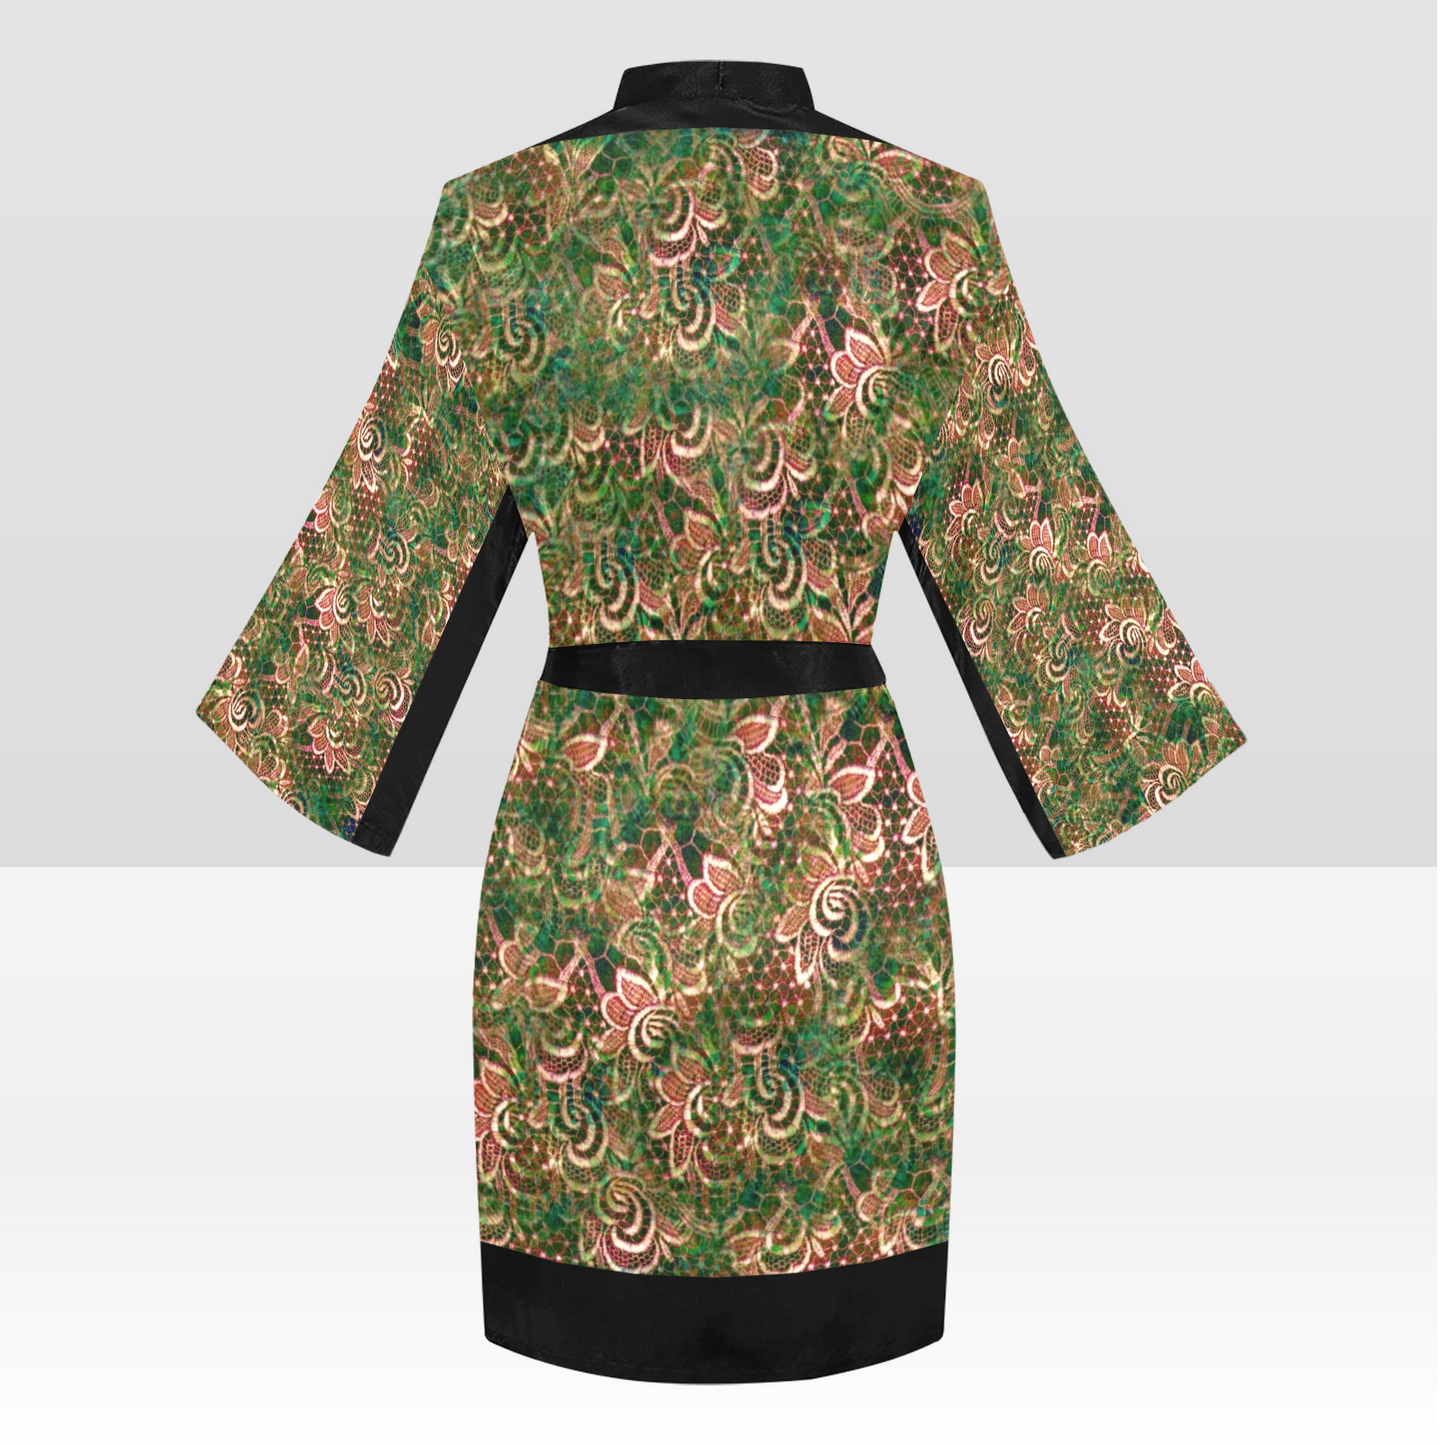 Victorian Lace Kimono Robe, Black or White Trim, Sizes XS to 2XL, Design 34